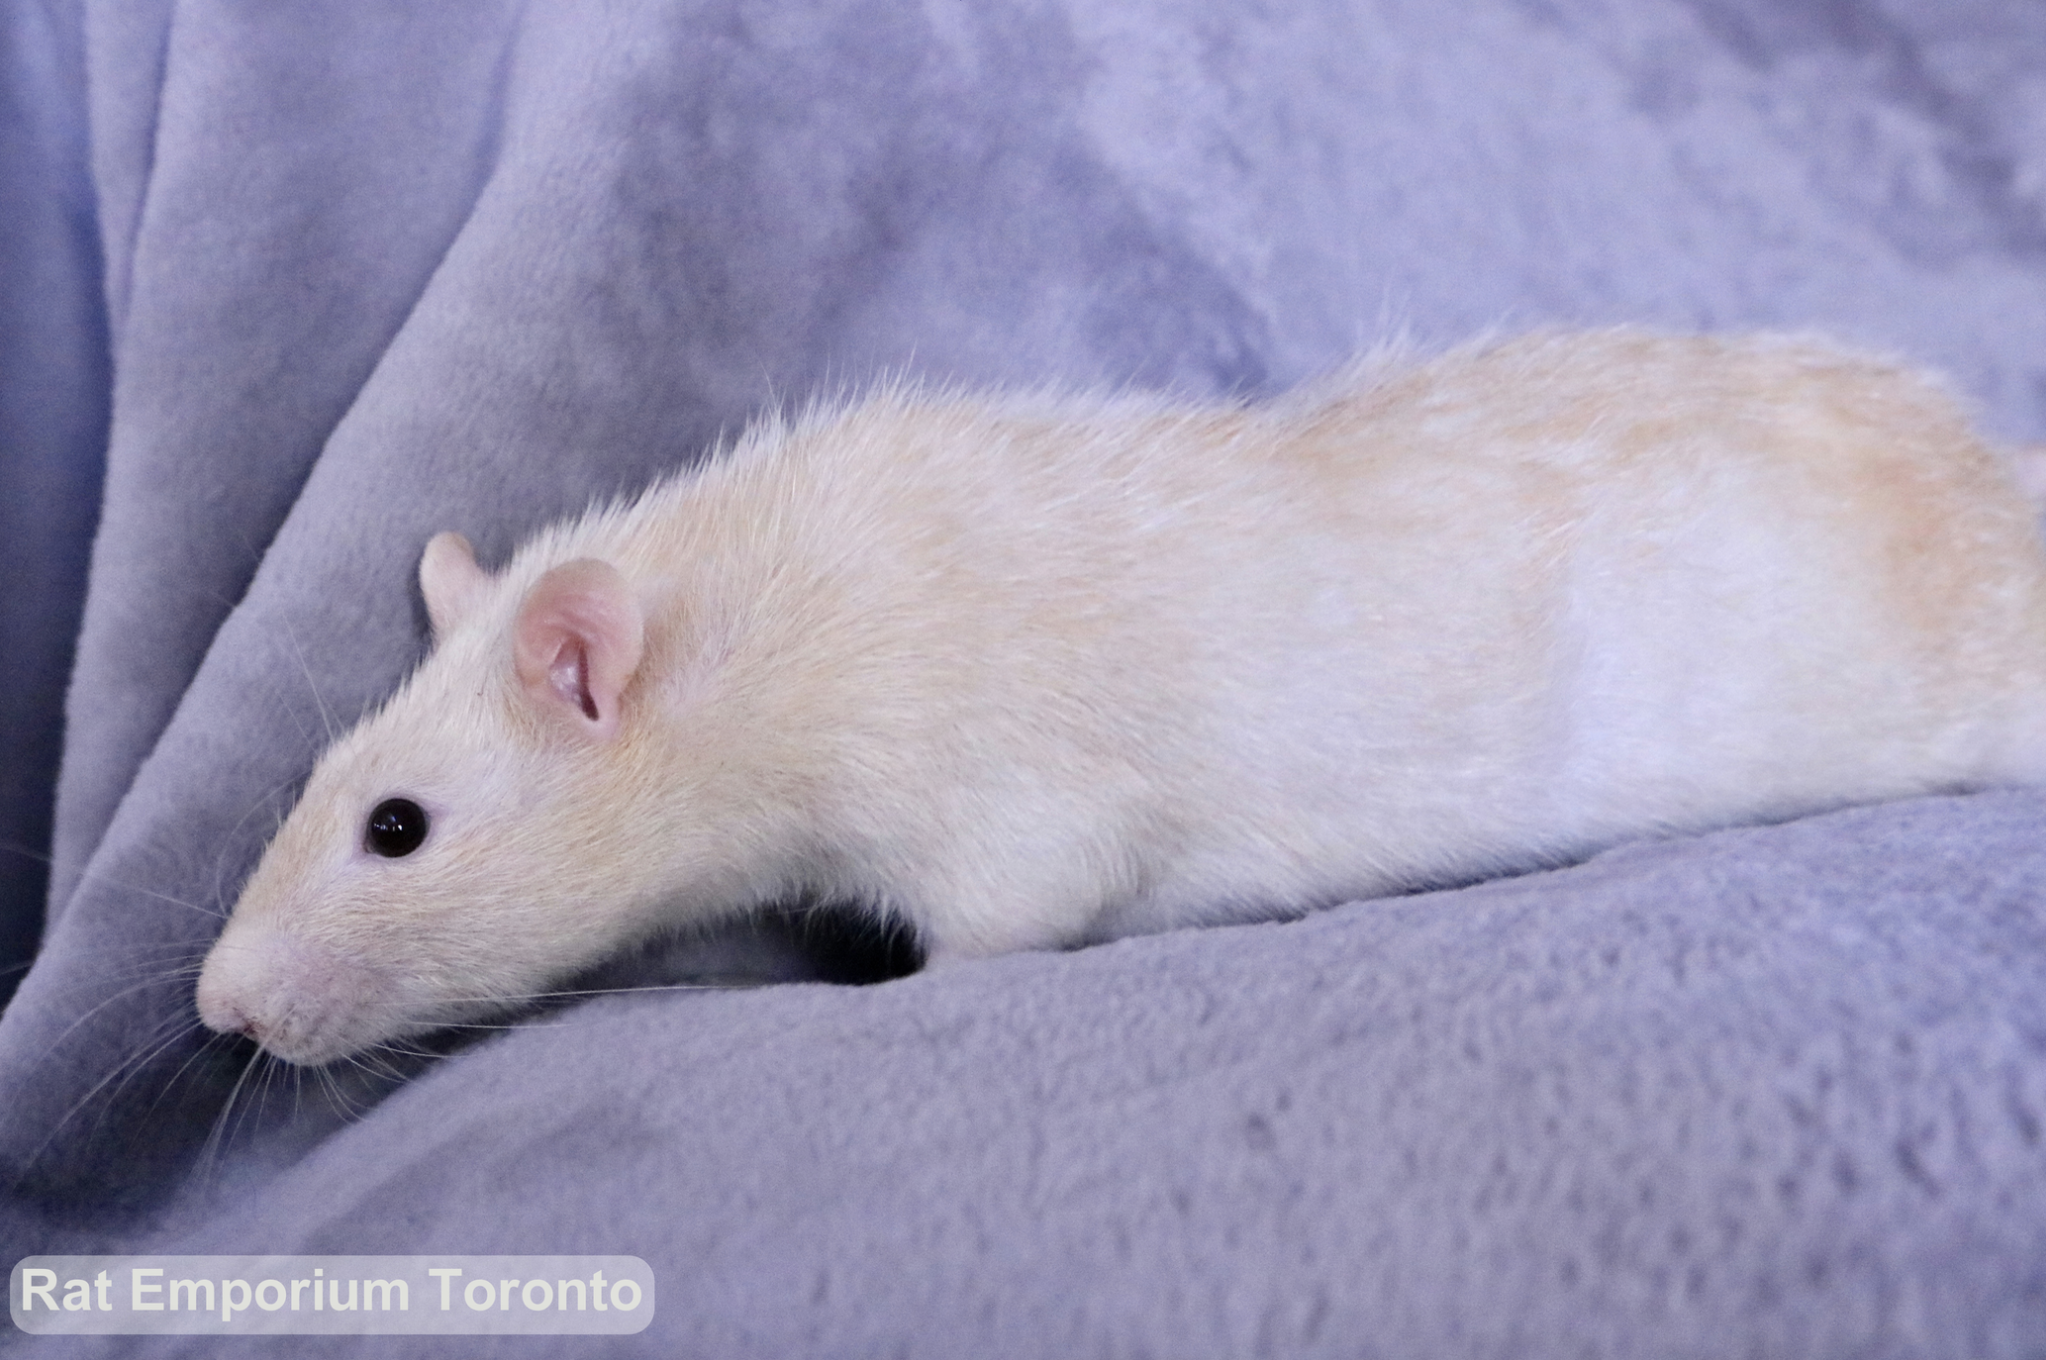 Adopt pet rats Toronto - born and raised at the Rat Emporium - adopt pet rats Toronto